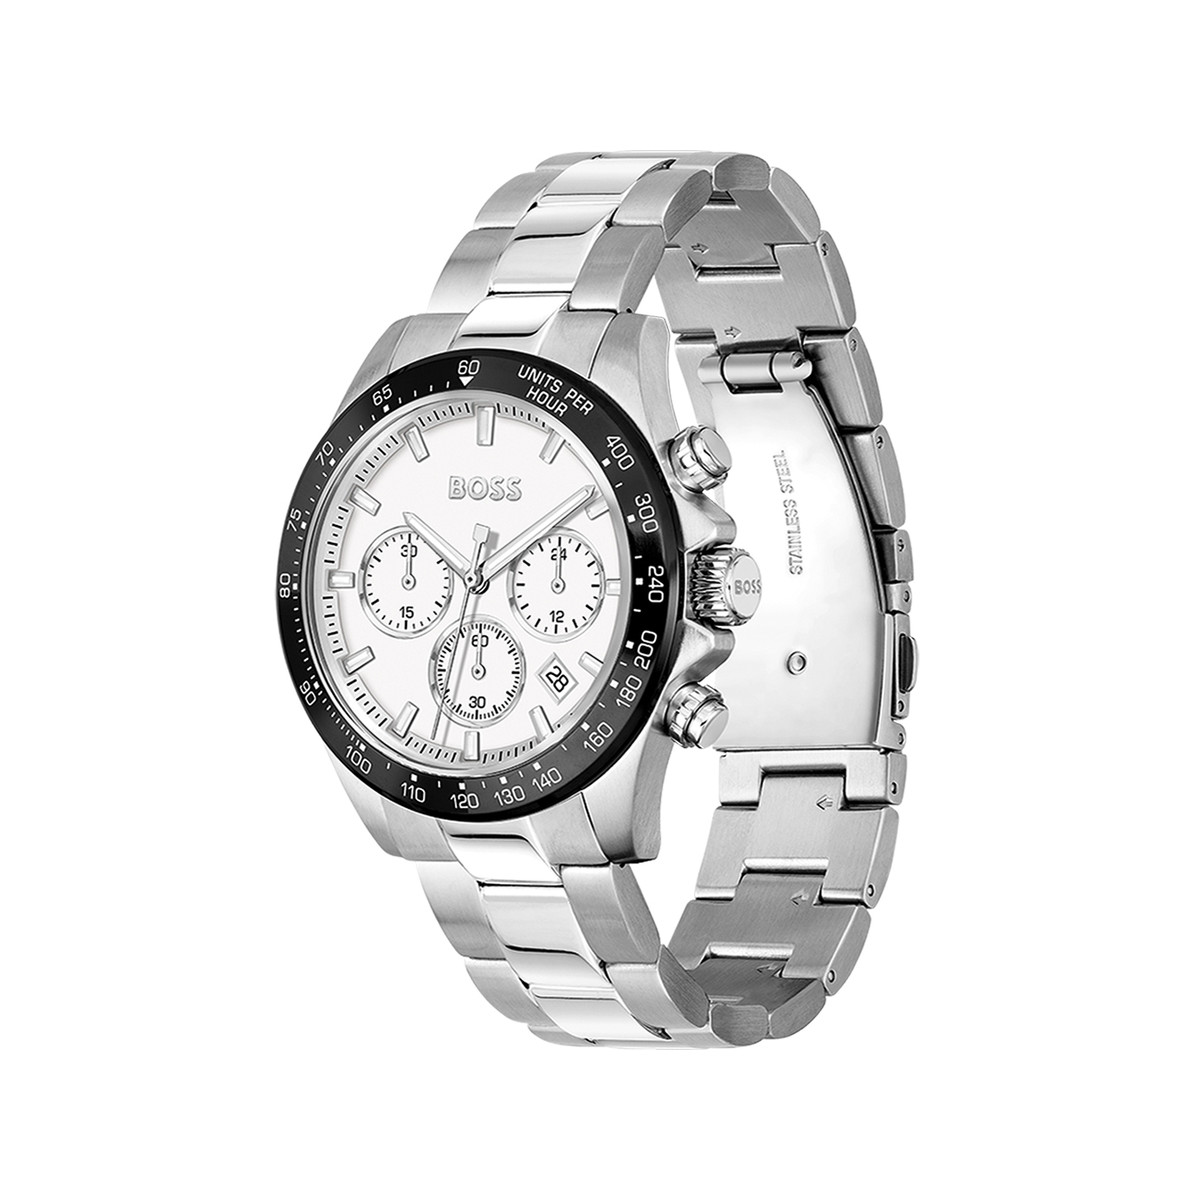 Montre BOSS sport lux homme chronographe bracelet acier inoxydable argent - vue 2